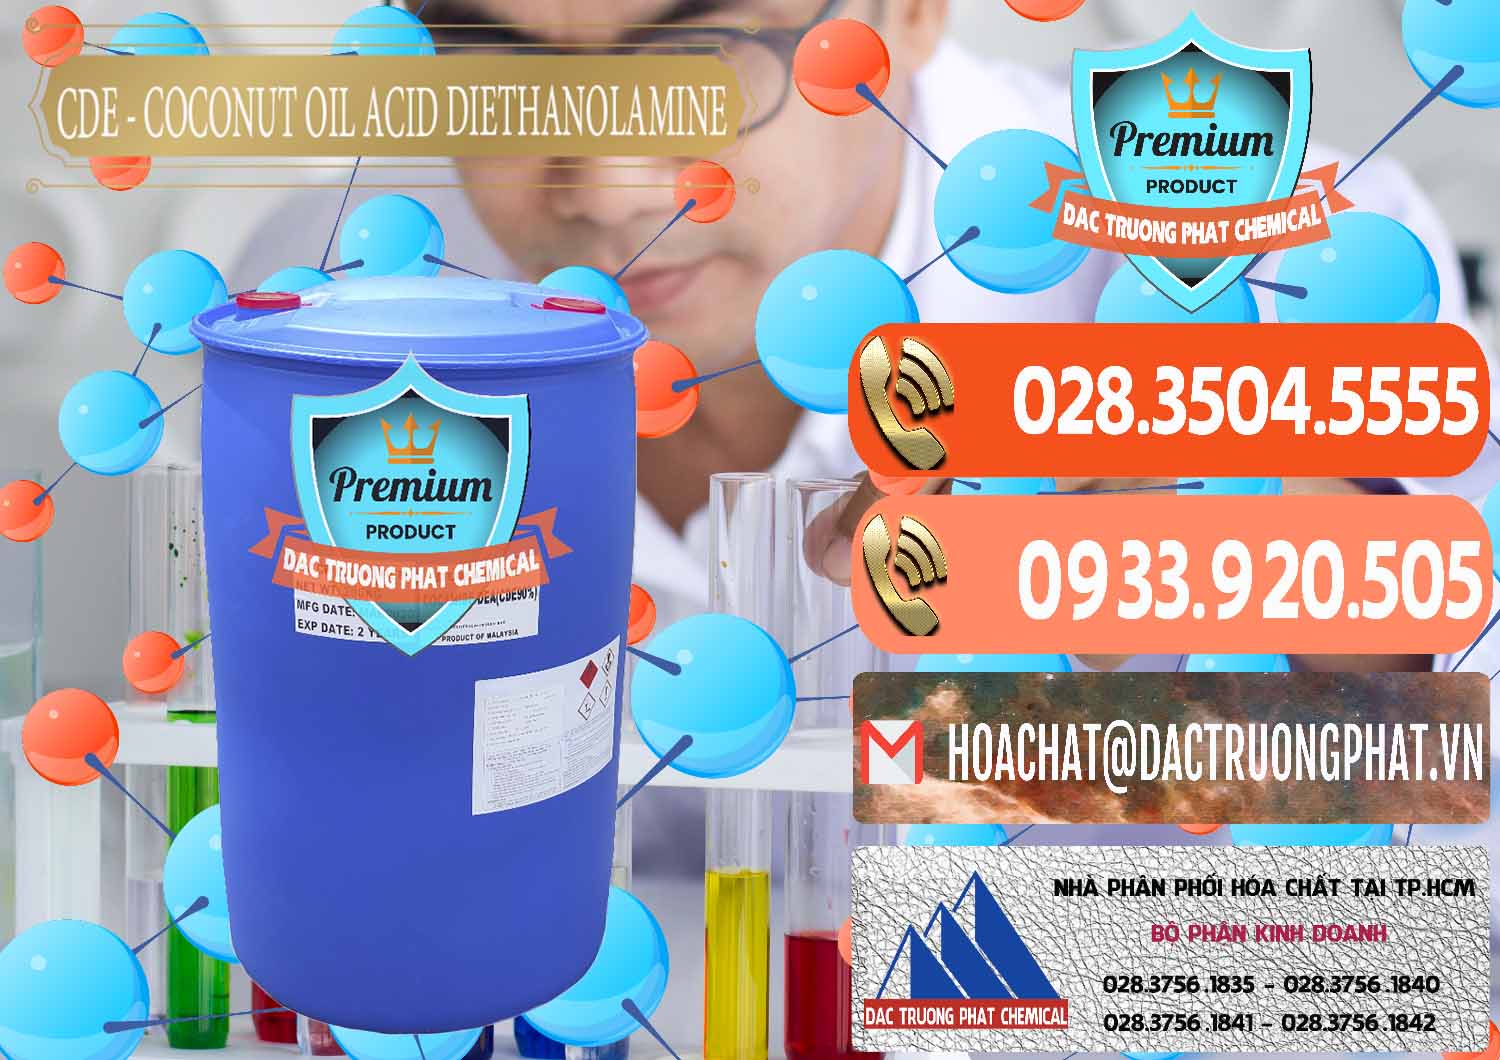 Chuyên nhập khẩu và bán CDE - Coconut Oil Acid Diethanolamine Mã Lai Malaysia - 0311 - Công ty chuyên bán & phân phối hóa chất tại TP.HCM - hoachatmientay.com